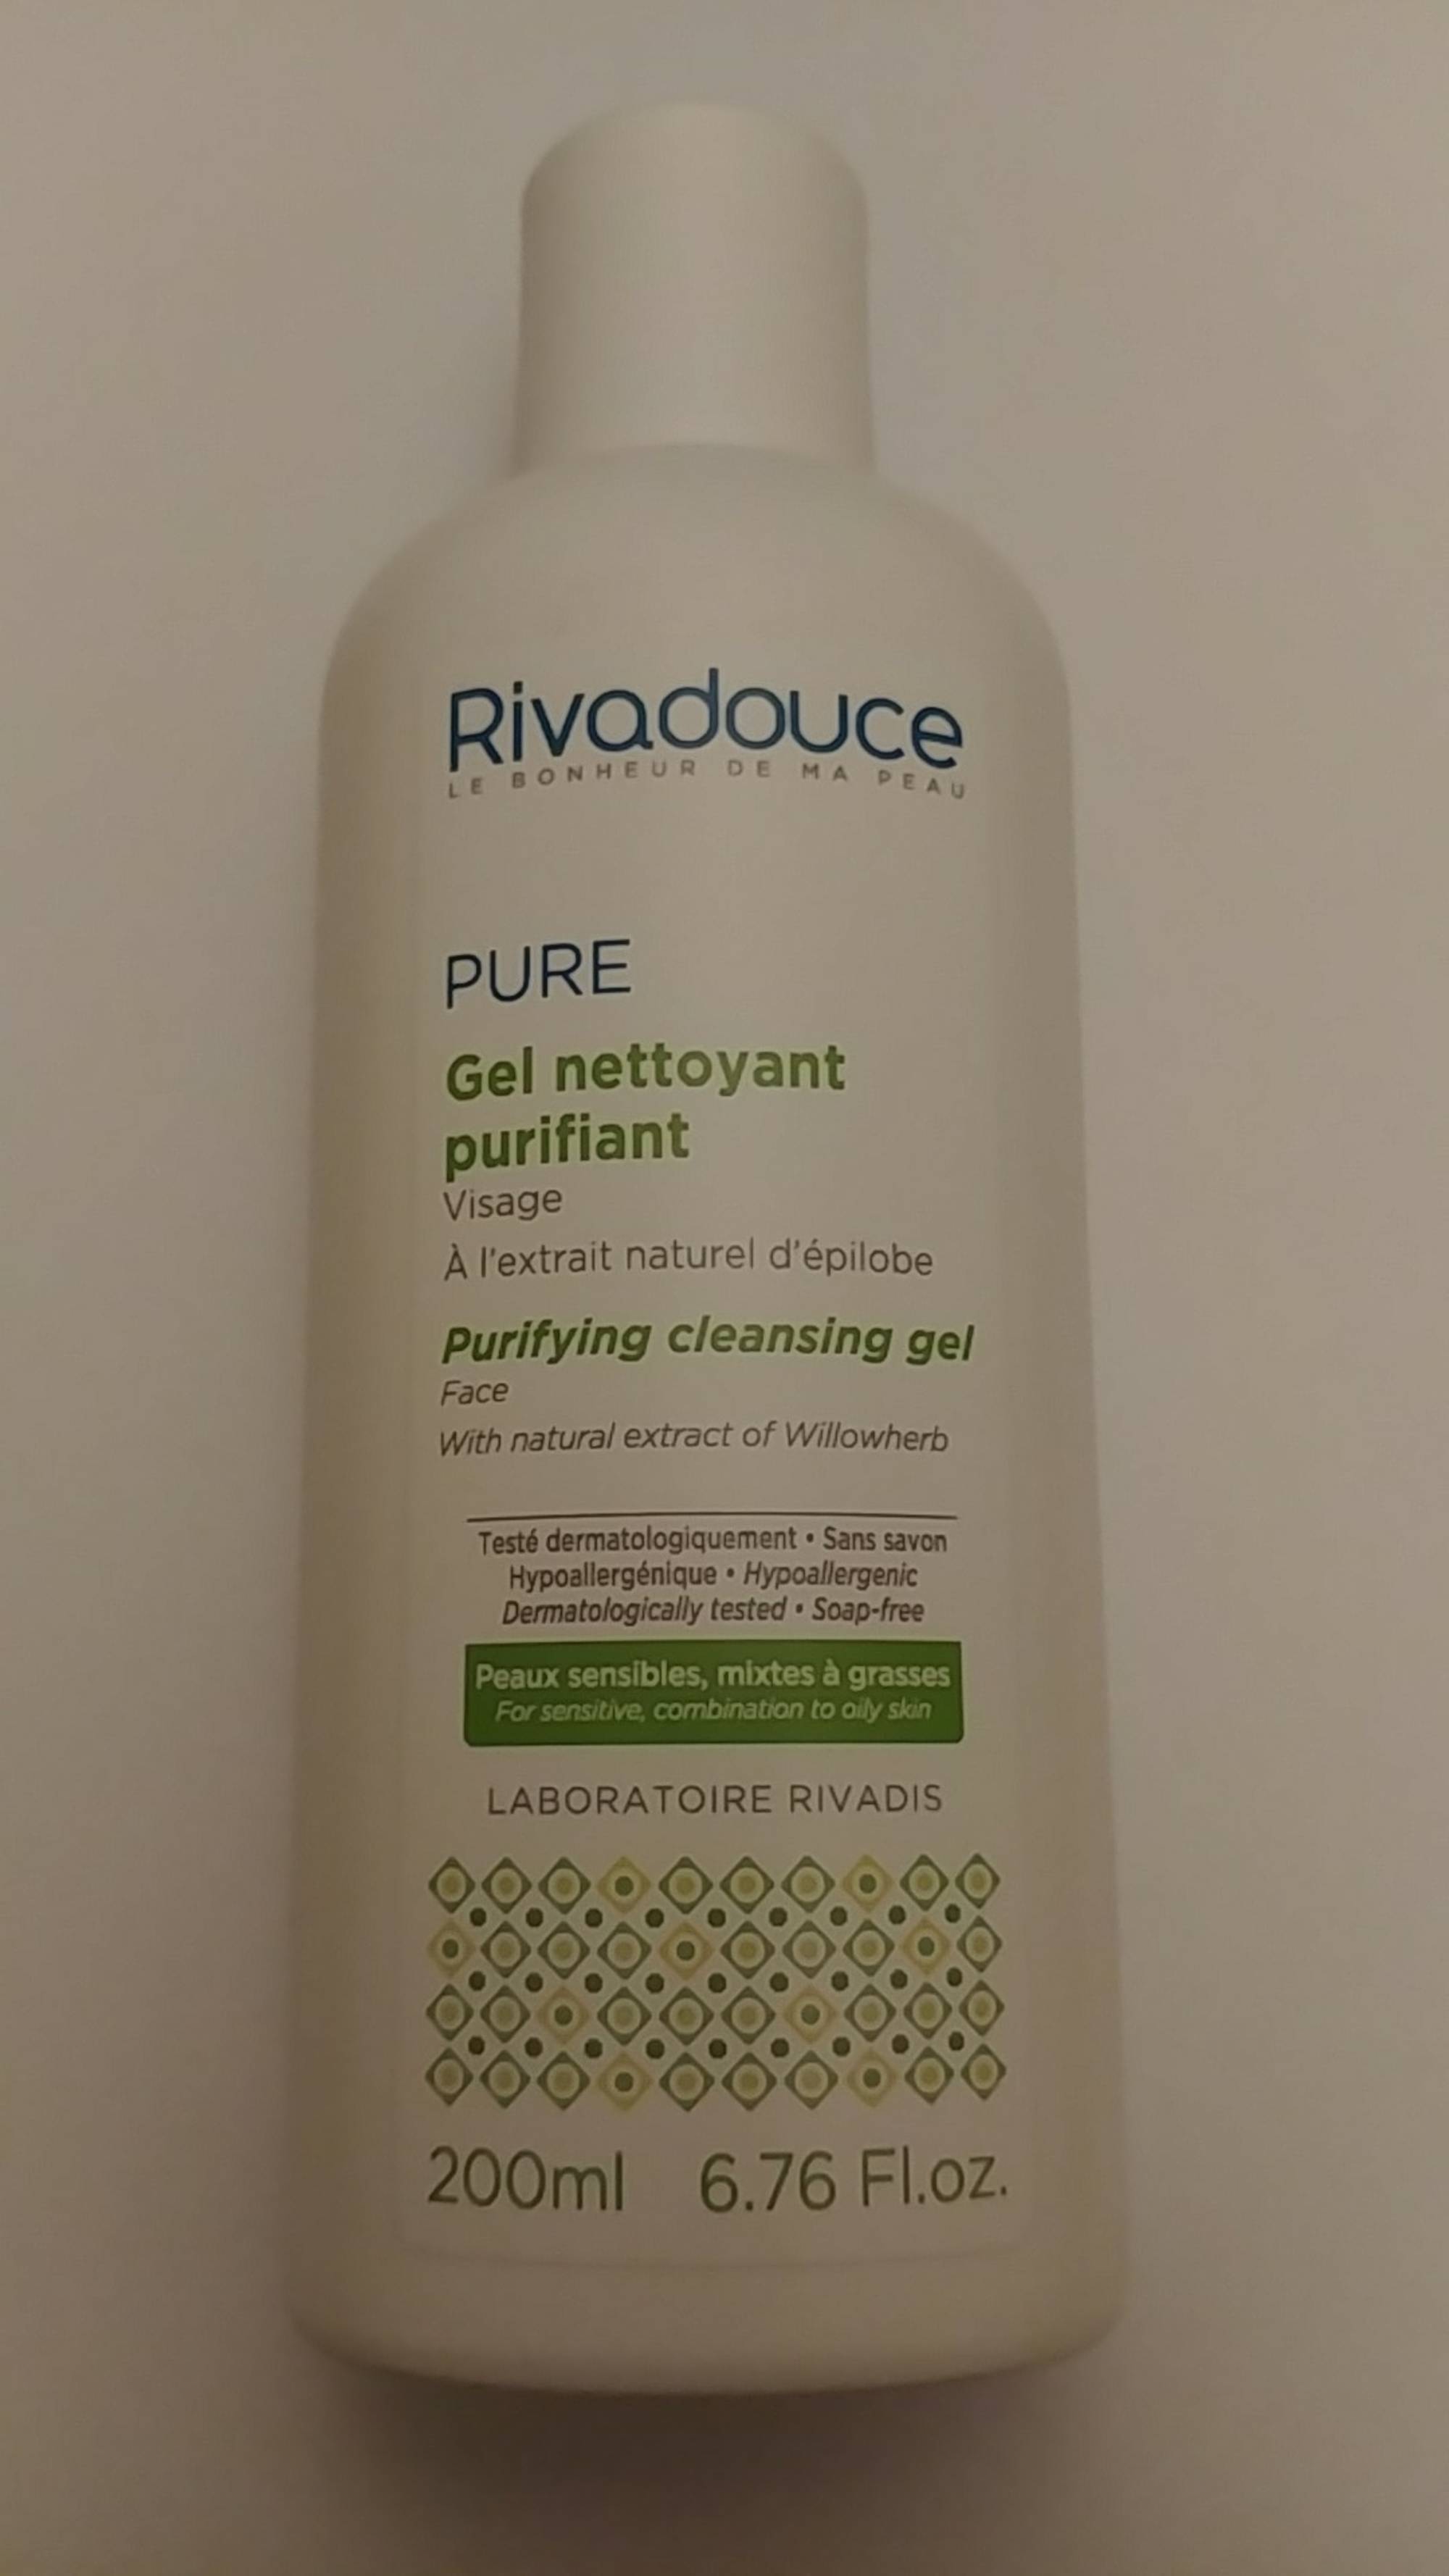 RIVADOUCE - Pure - Gel nettoyant purifiant visage